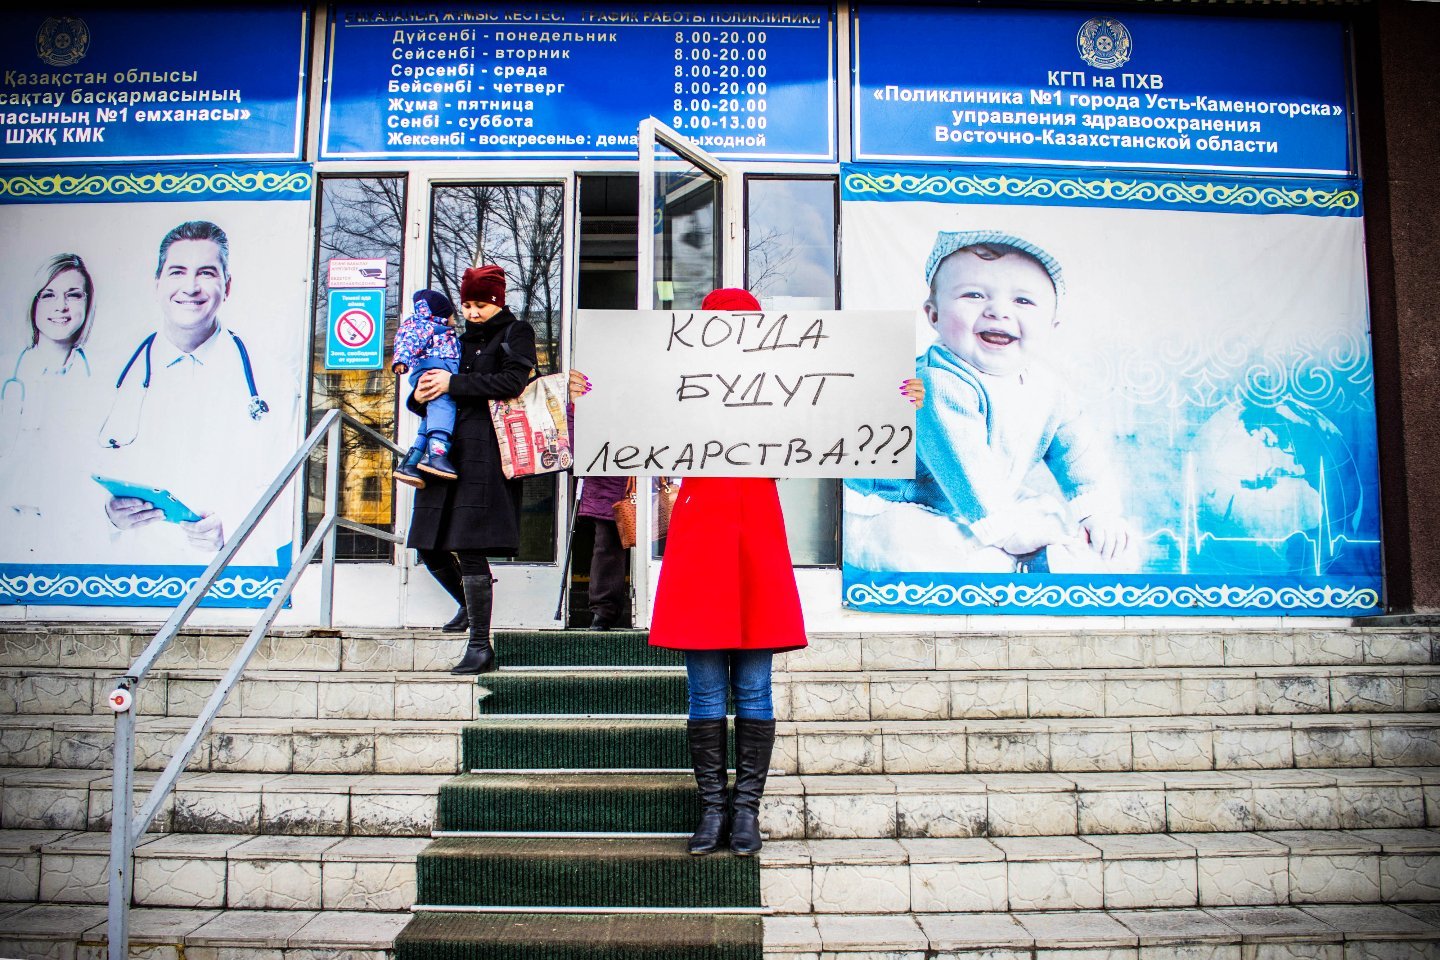 Новости Казахстана / Экономика в Казахстане / В бюджете РК предусмотрели меньше денег на лекарства, чем просили медорганизации